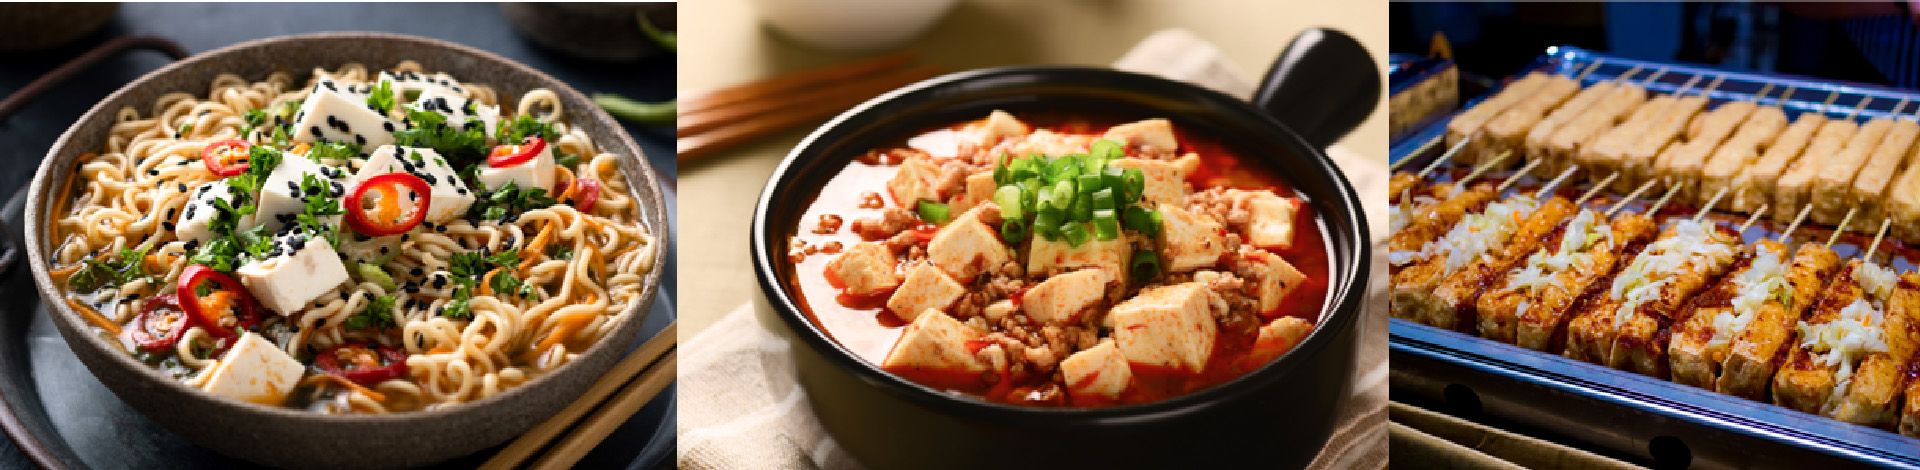 विभिन्न प्रकार के टोफू मेजबानी, ठोसता और अपनी मेज पर विभिन्न भोजन लागू होती है, Yung Soon Lih (eversoon) टोफू बनाने की मशीन वैकल्पिक उपकरण के साथ मिलकर अत्यधिक ठोस टोफू और एशियाई सिल्कन टोफू उत्पादित करने में सक्षम है।